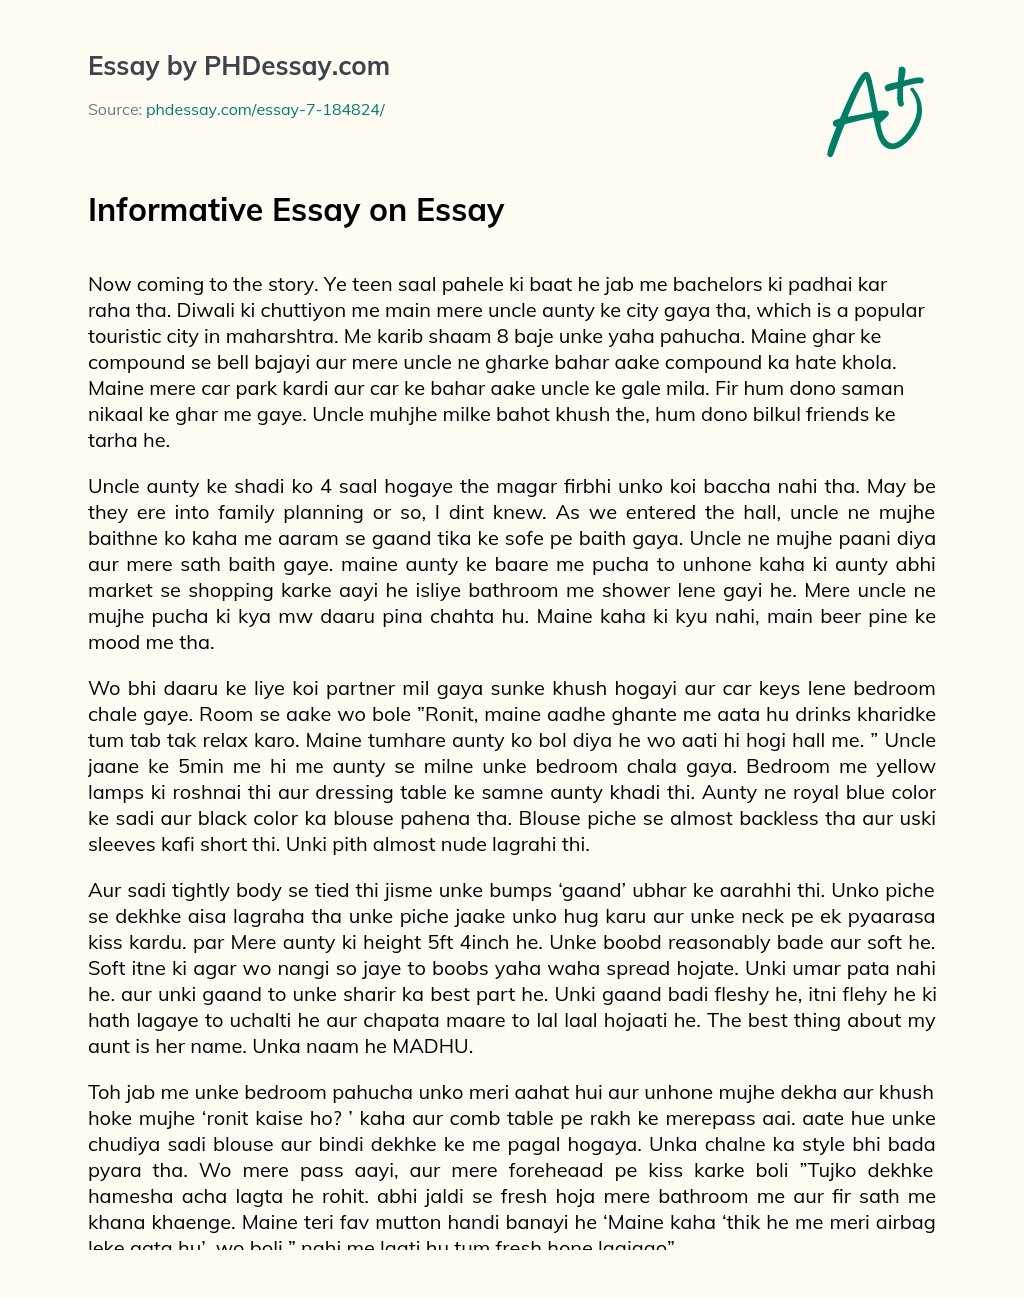 Informative Essay on Essay essay